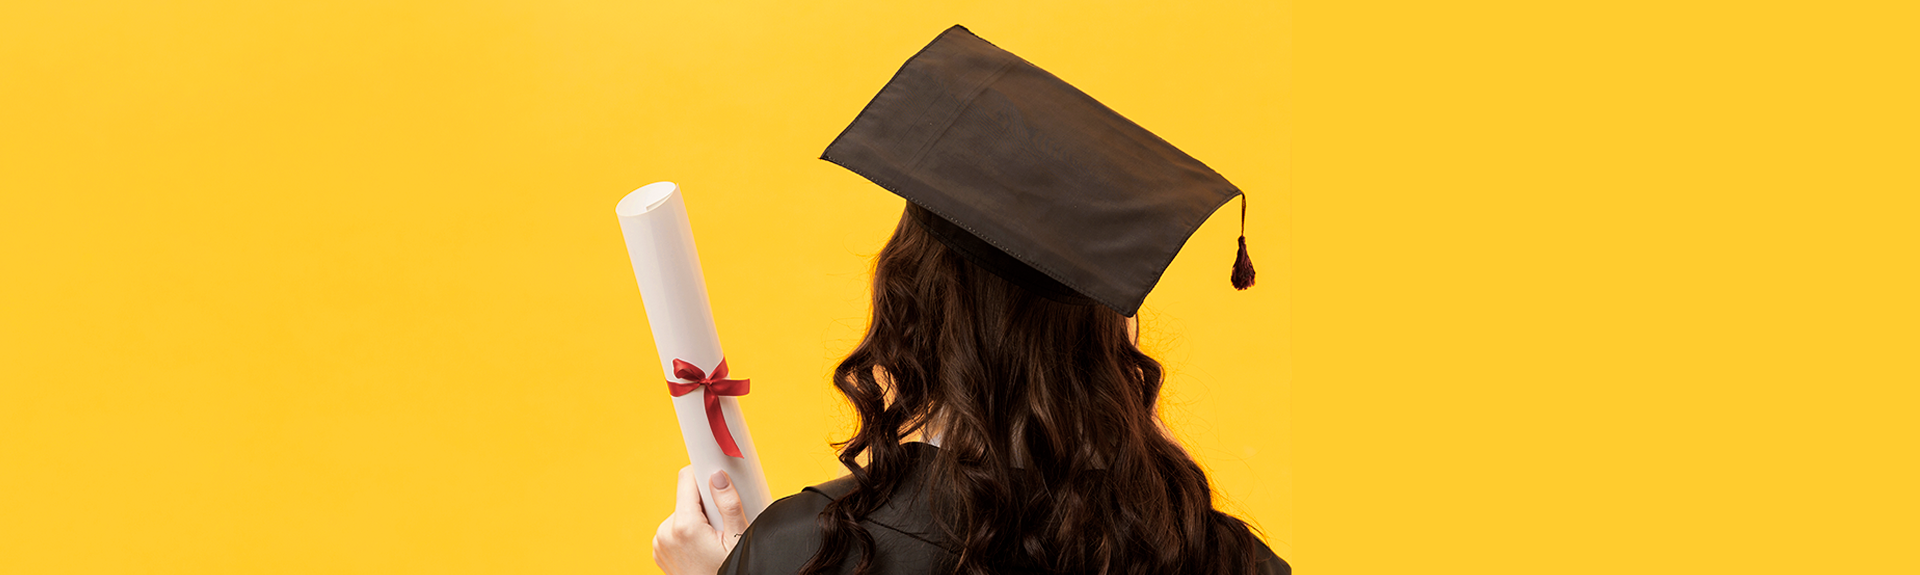 header étudiante diplômée d'école de commerce en toge et chapeau de dos avec son diplôme